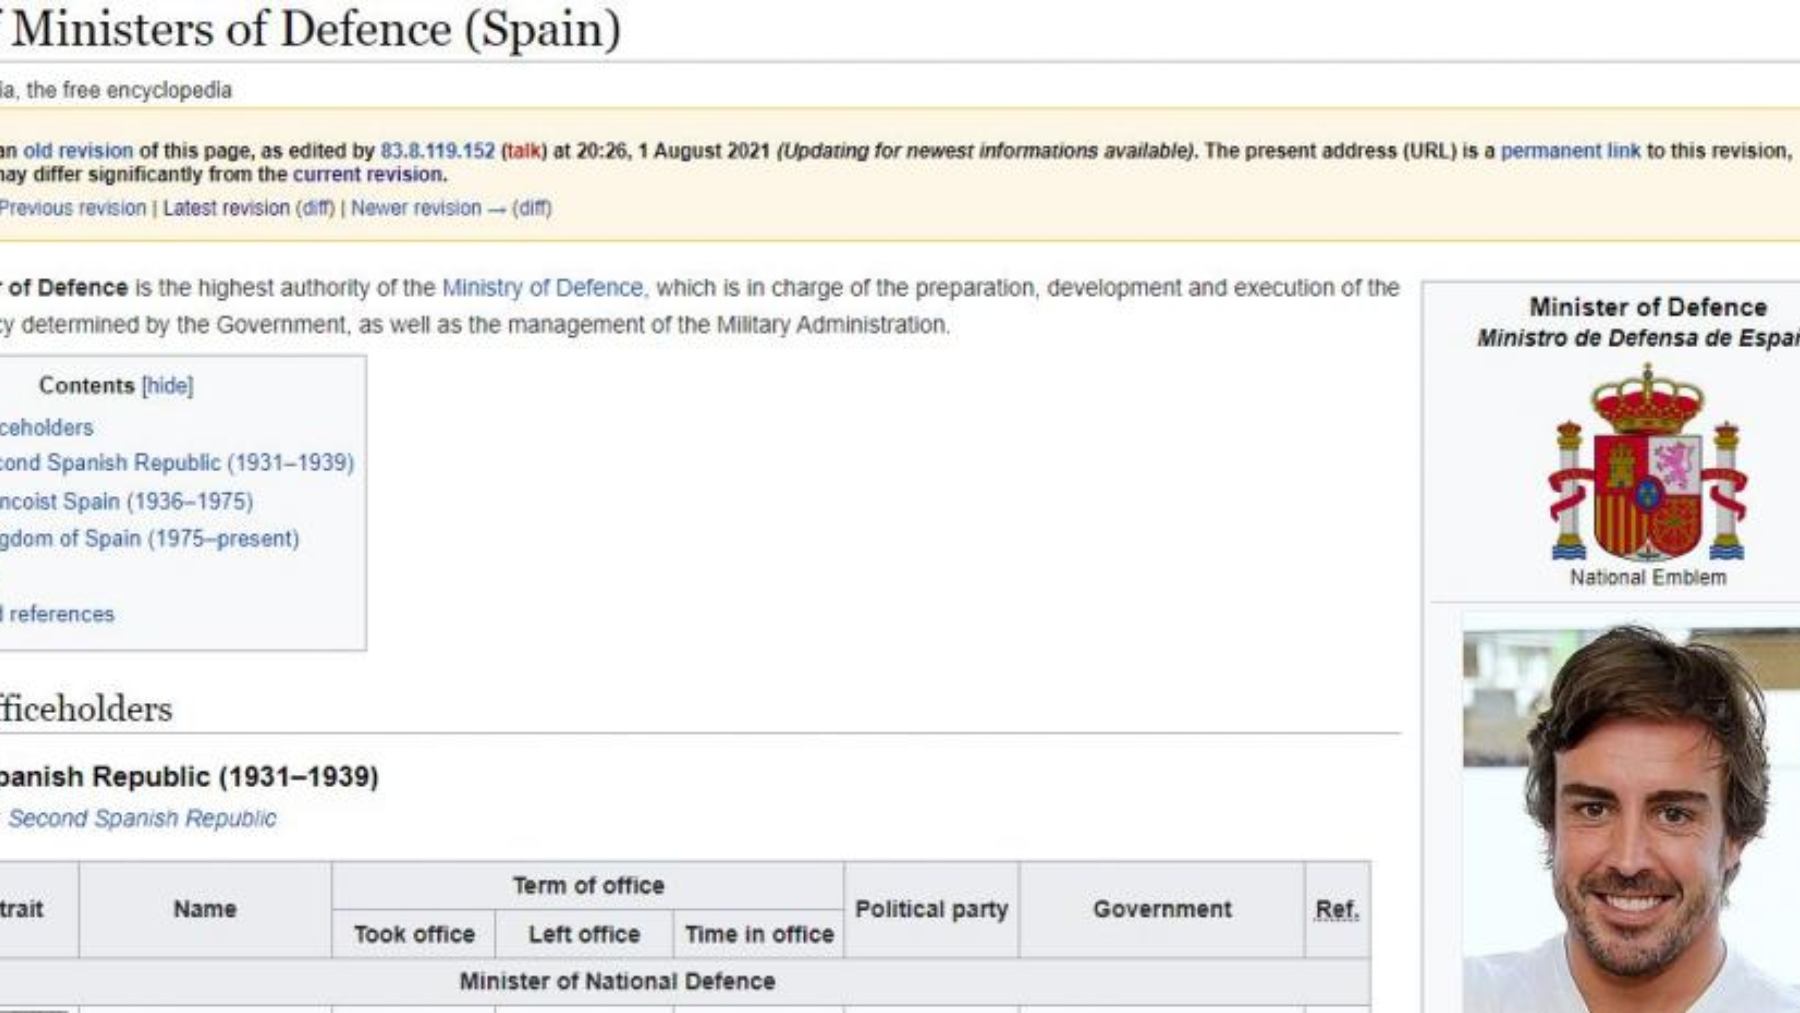 El troleo a Fernando Alonso en la Wikipedia.